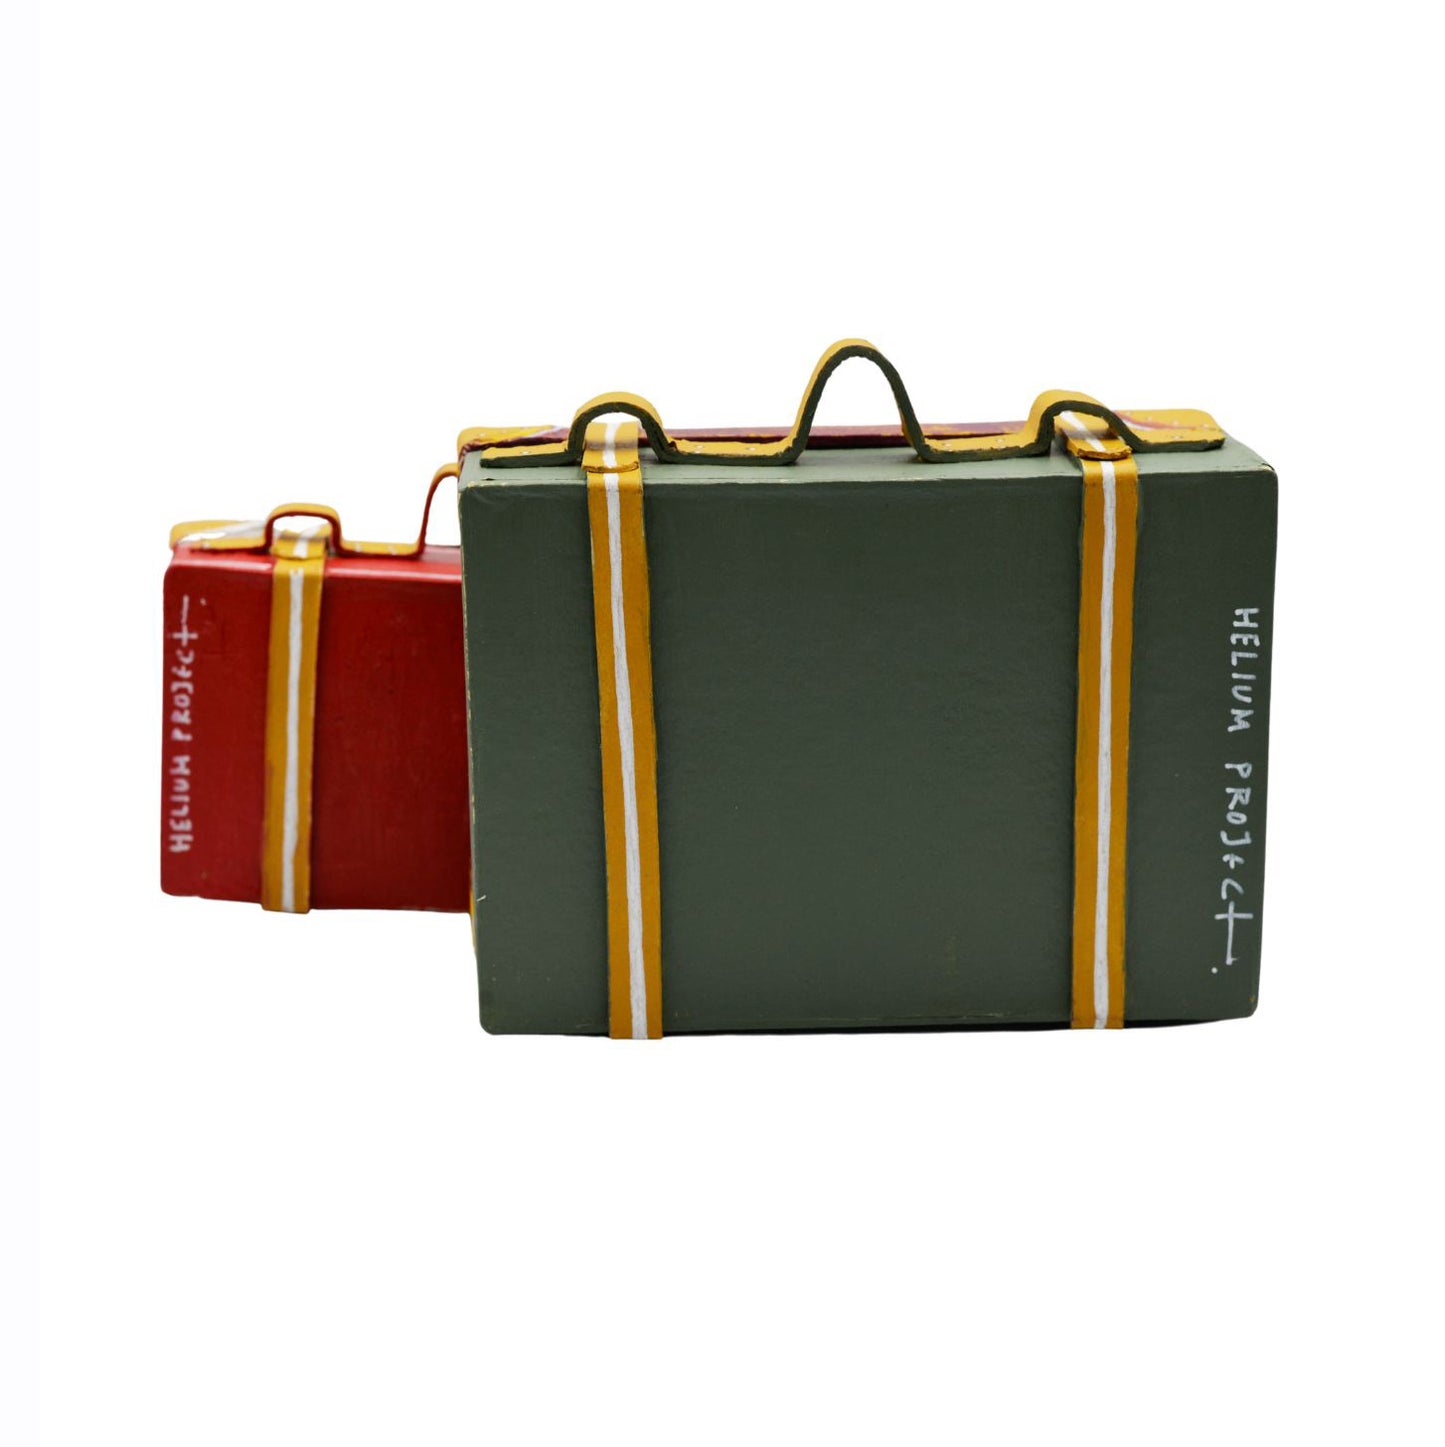 Set of 2 Vintage Decorative Suitcases